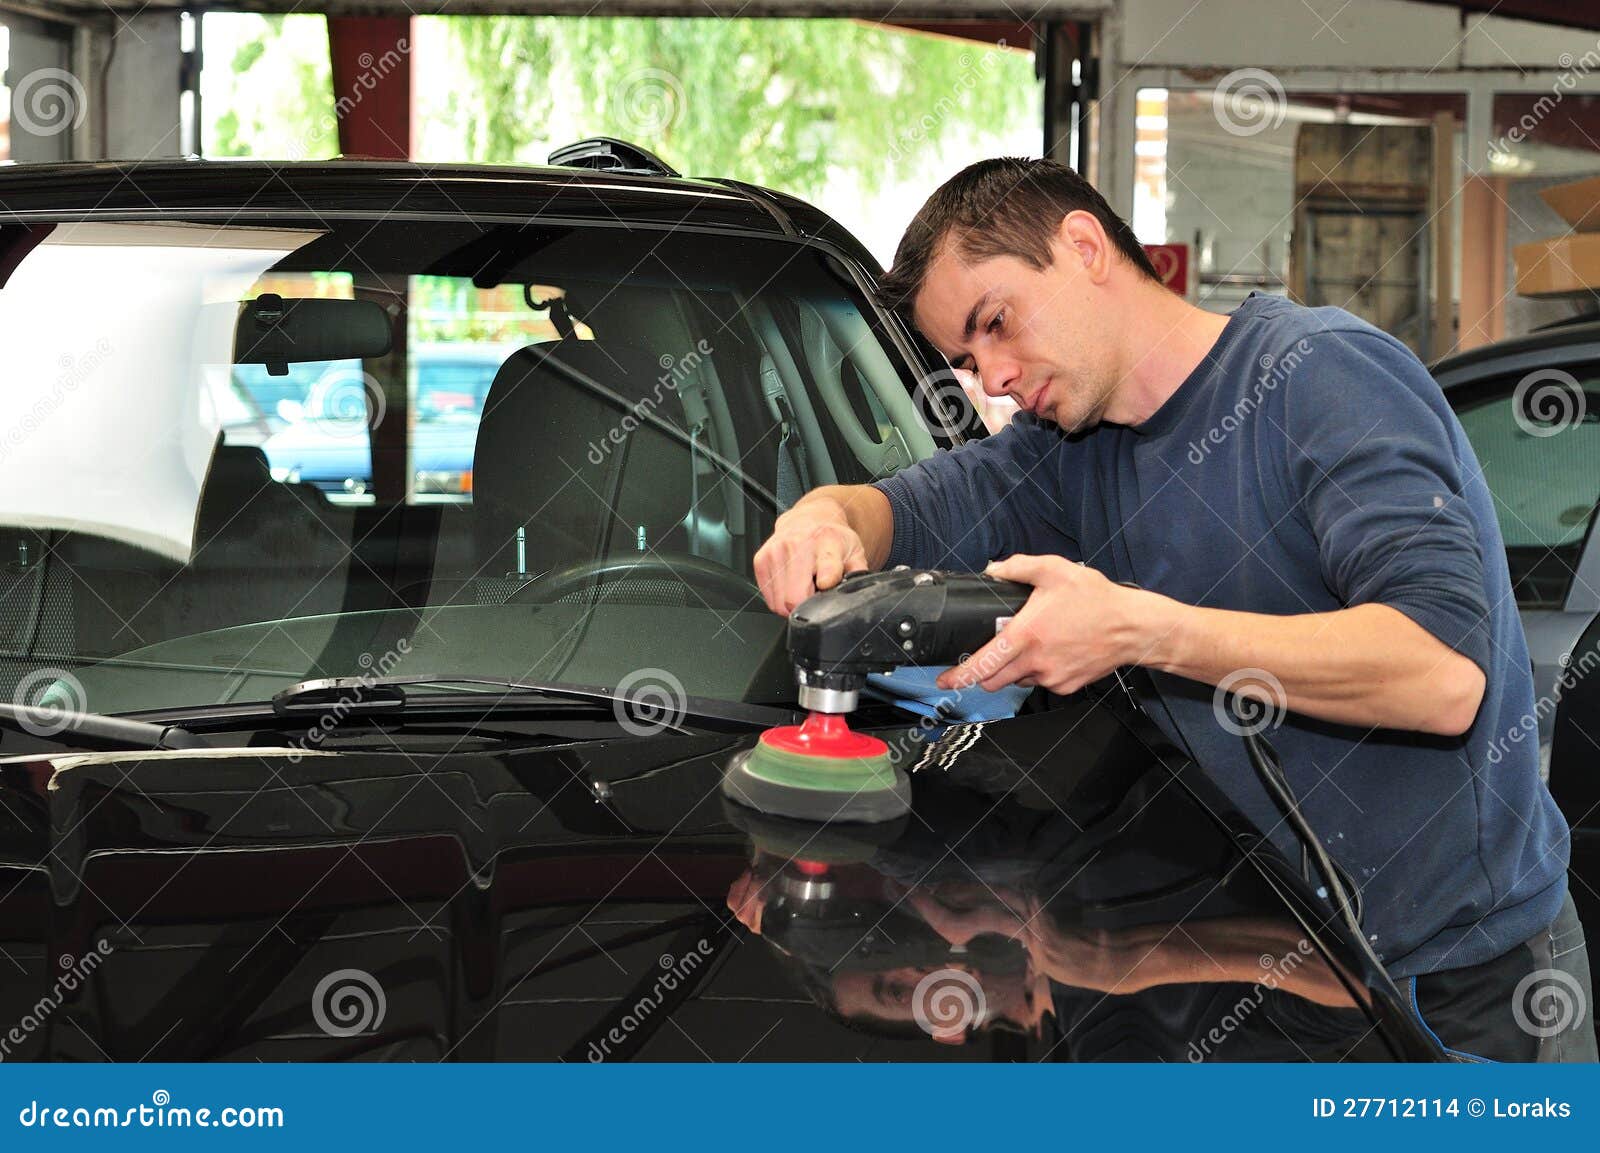 polishing a car.